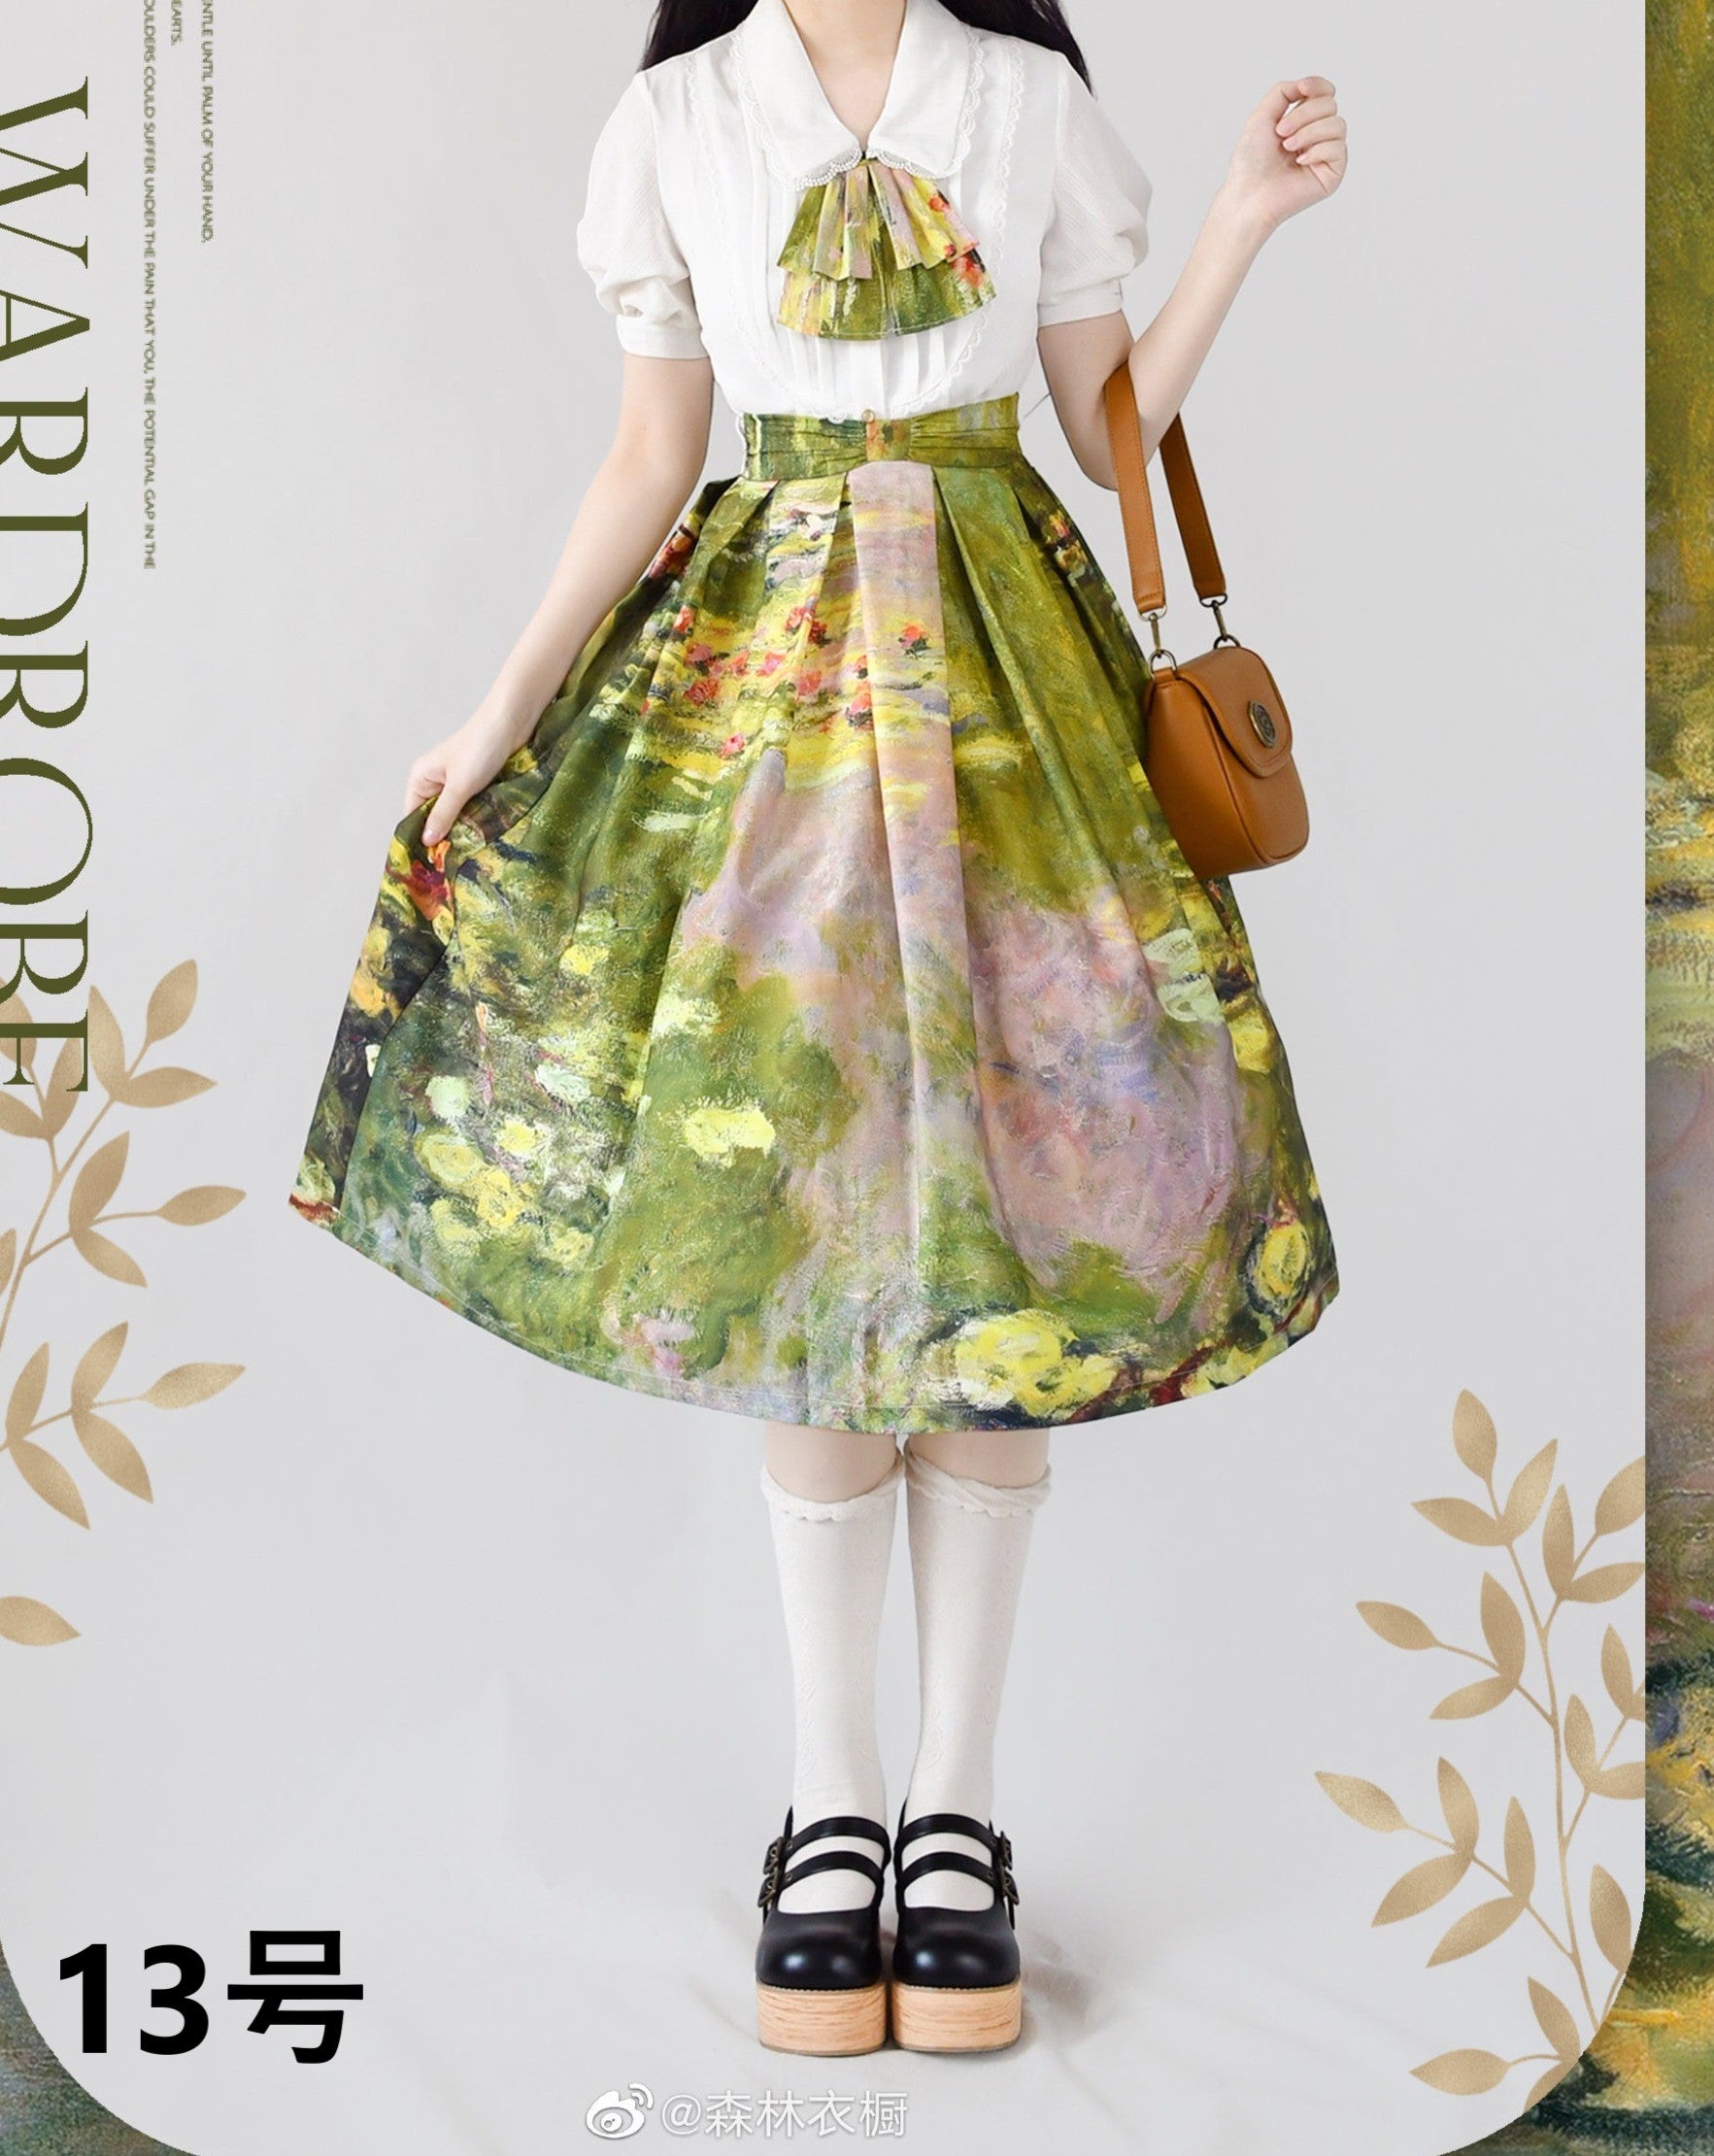 モネの絵画をまとうスカート 全15作品 – ロリータファッション通販RonRon